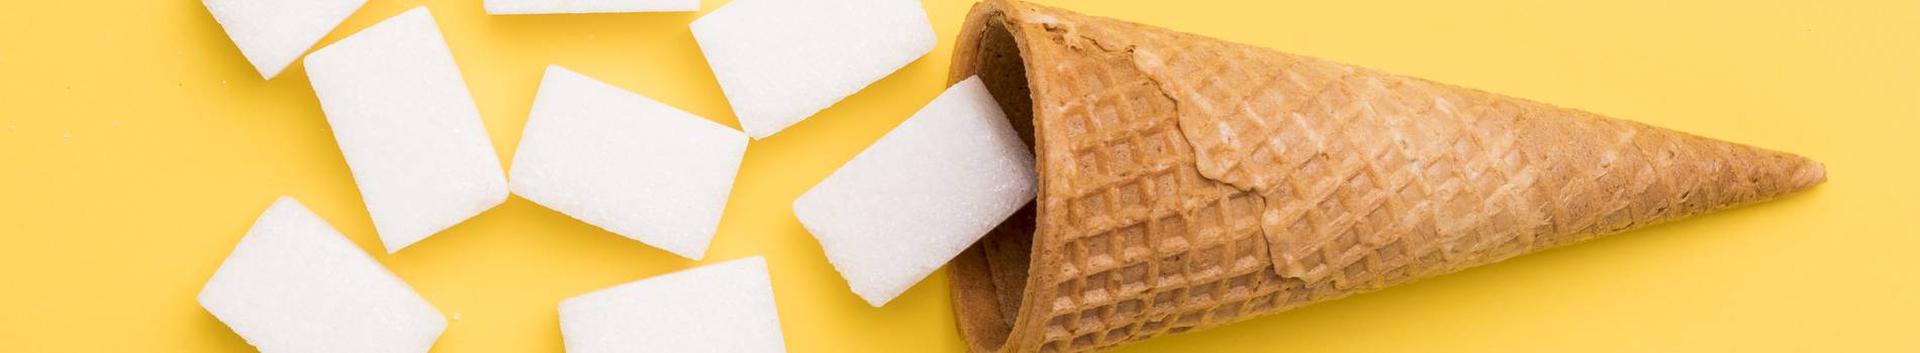 Me usume, et kasesiirup on suurepärane alternatiiv valgele suhkrule ja sellel hõrgu metsase maitsega tootel on palju rakendusvõimalusi.